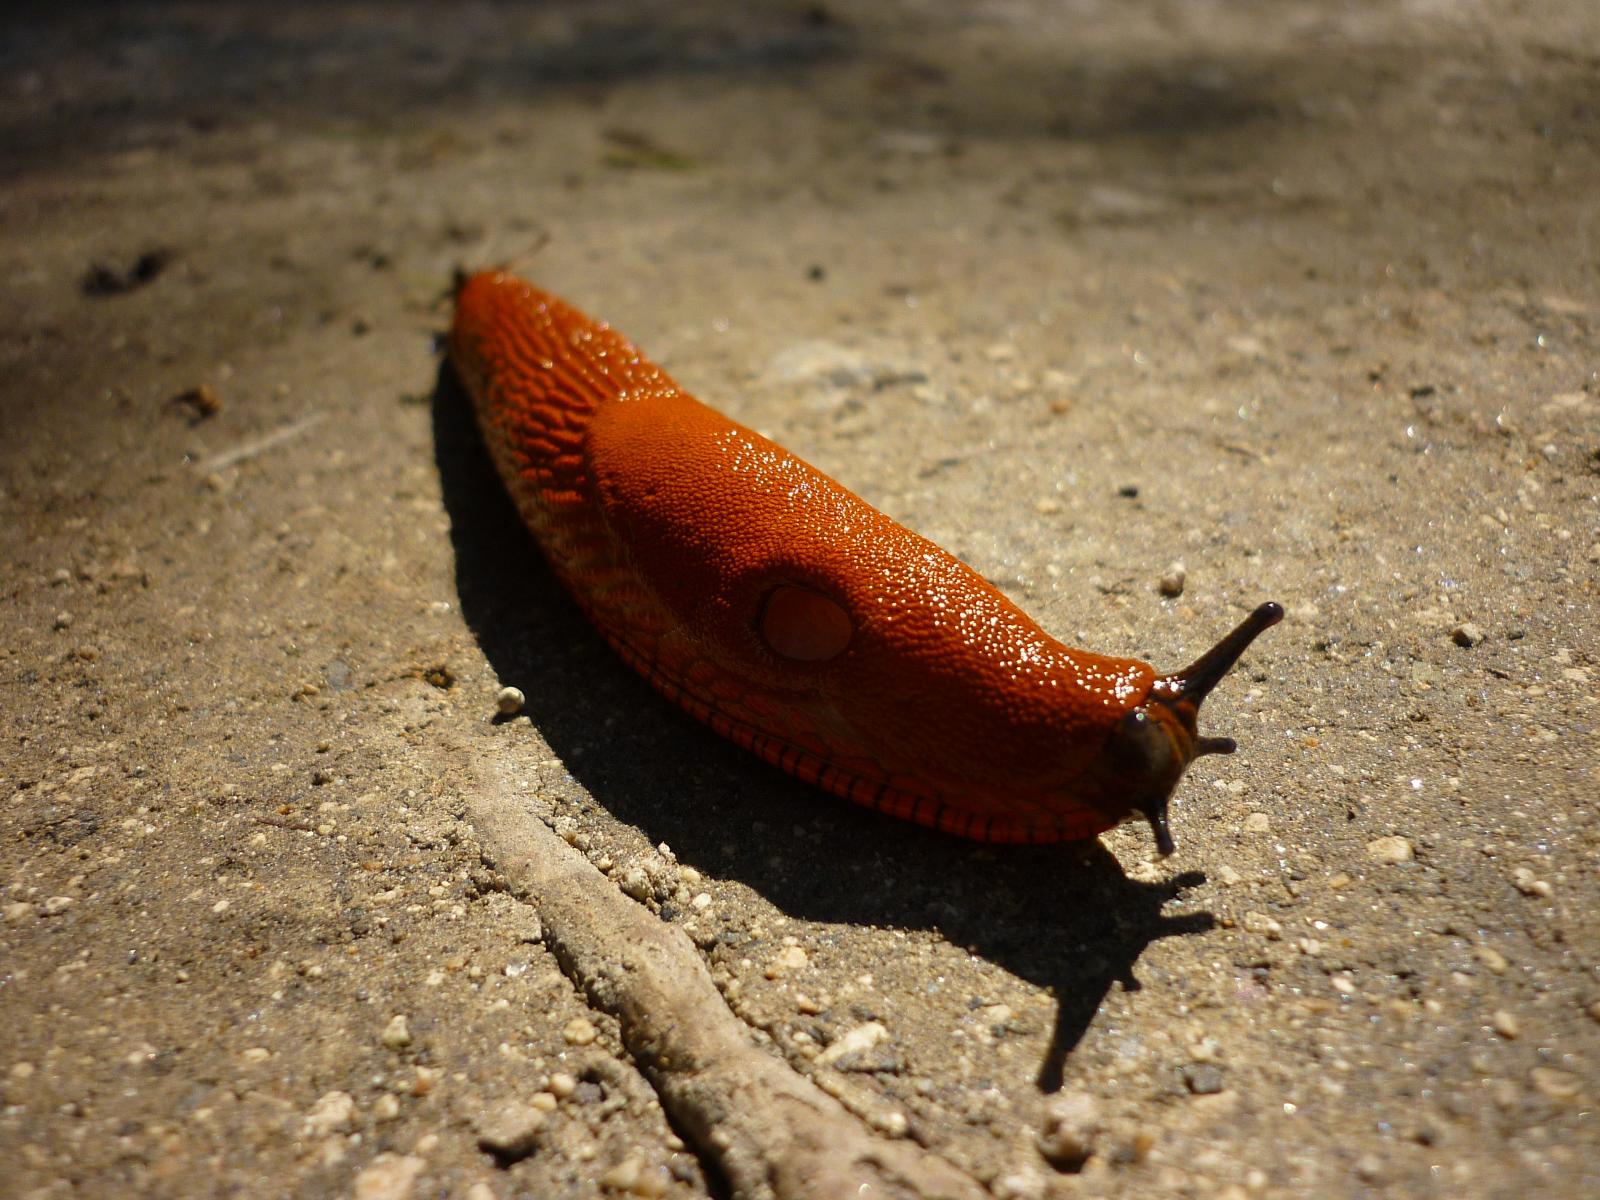 a small orange slug crawling across a dirty ground